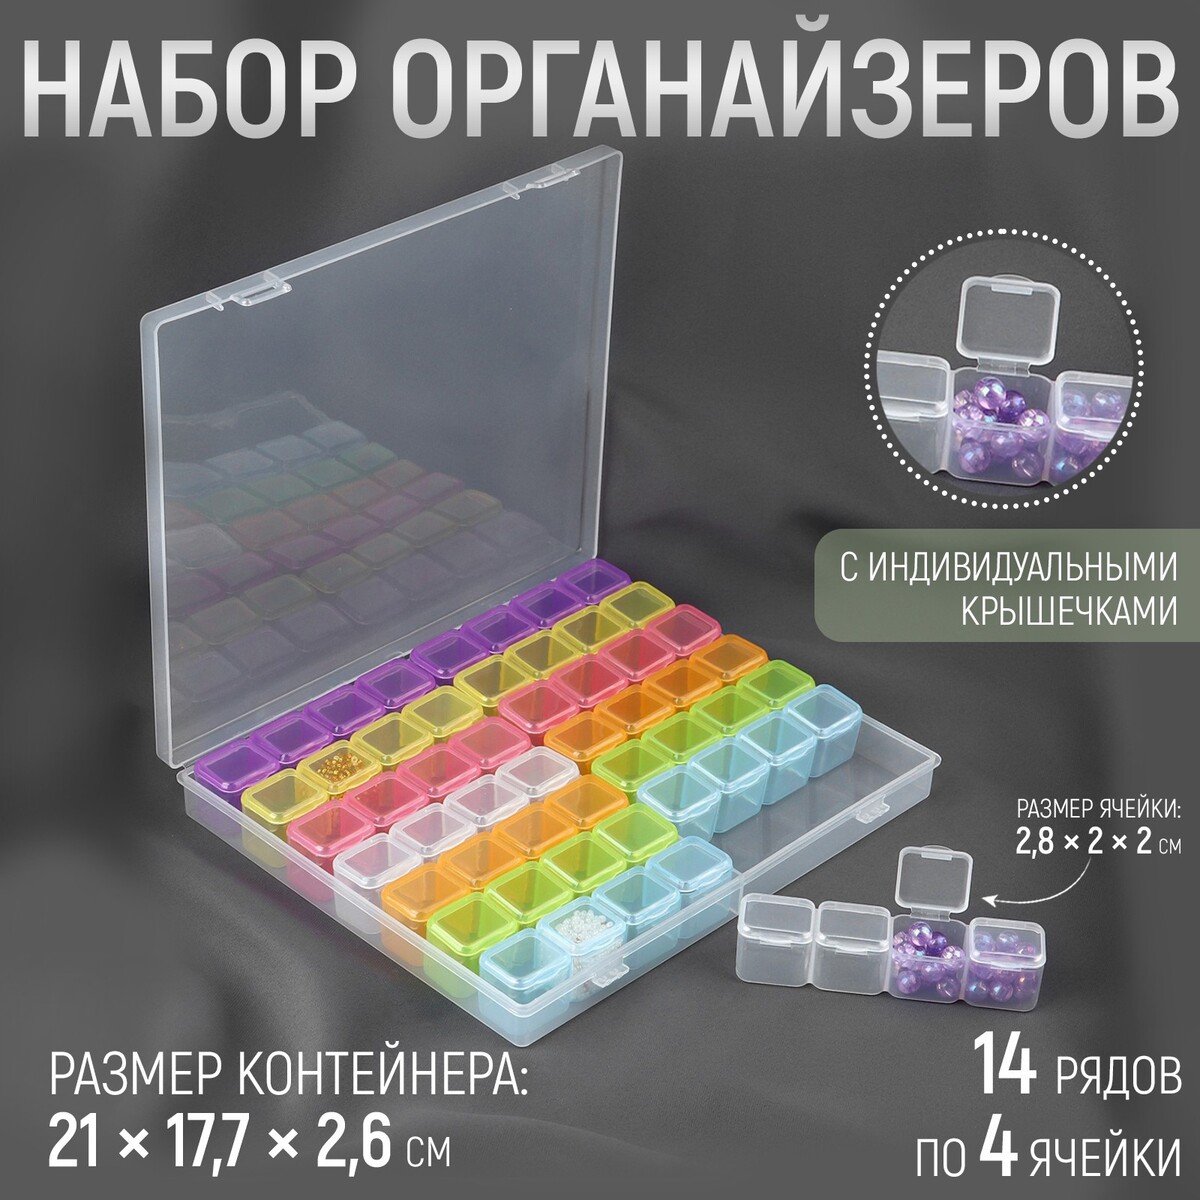 Набор органайзеров, 14 рядов по 4 ячейки, в контейнере, 21 × 17,7 × 2,6 см, цвет разноцветный